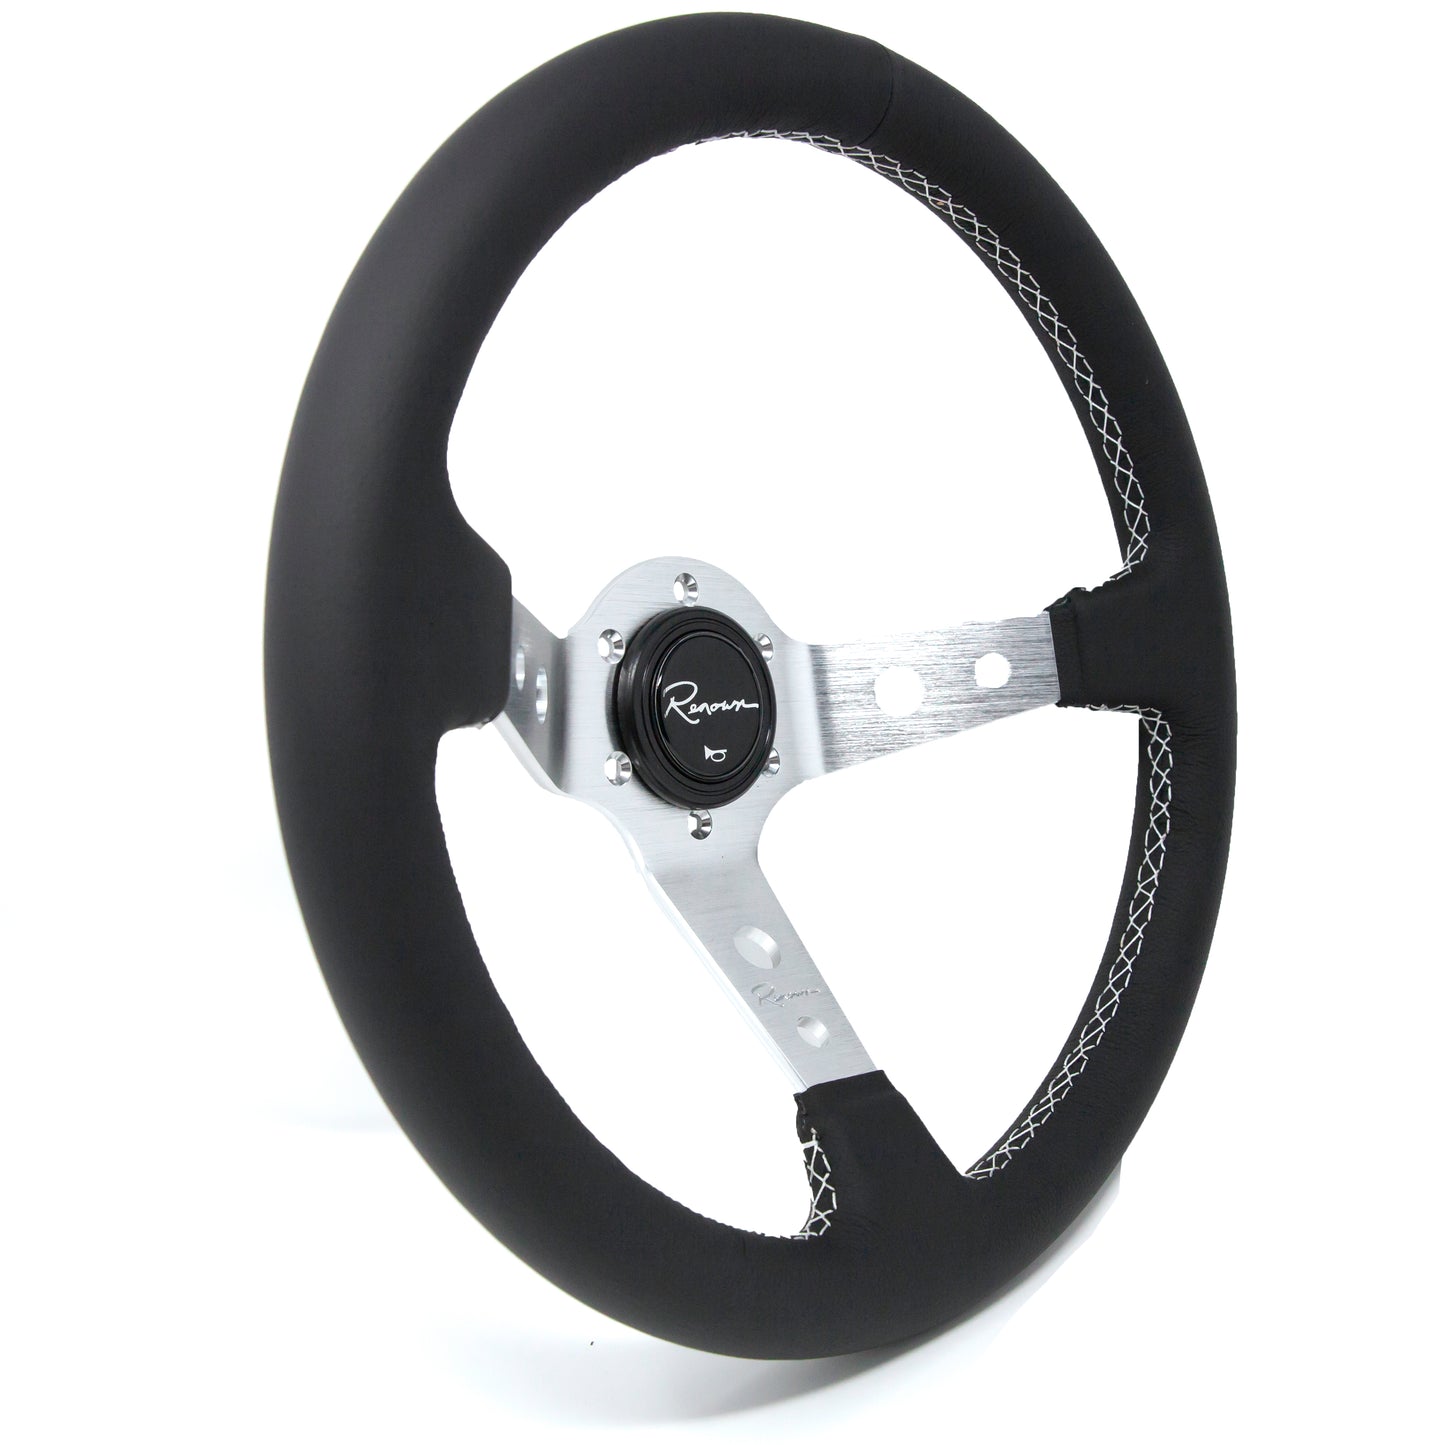 Renown 100 Silver Steering Wheel